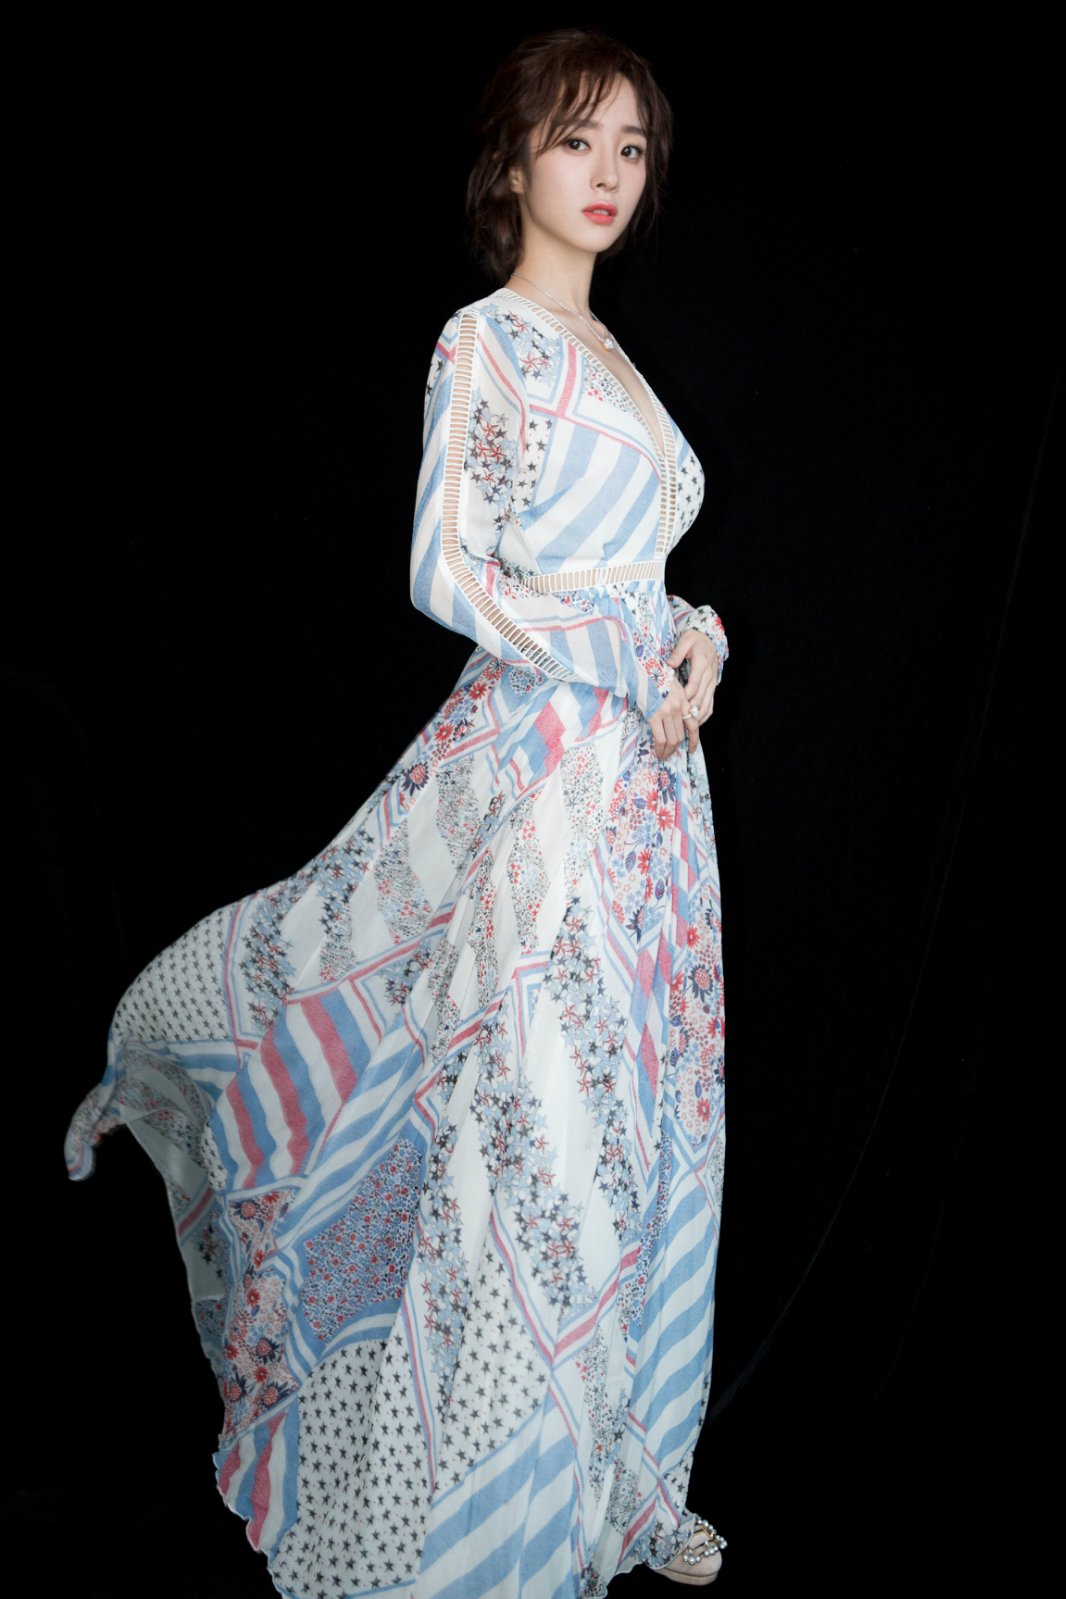 胡冰卿亮相bazaar150周年展 仙气长裙显优雅气质